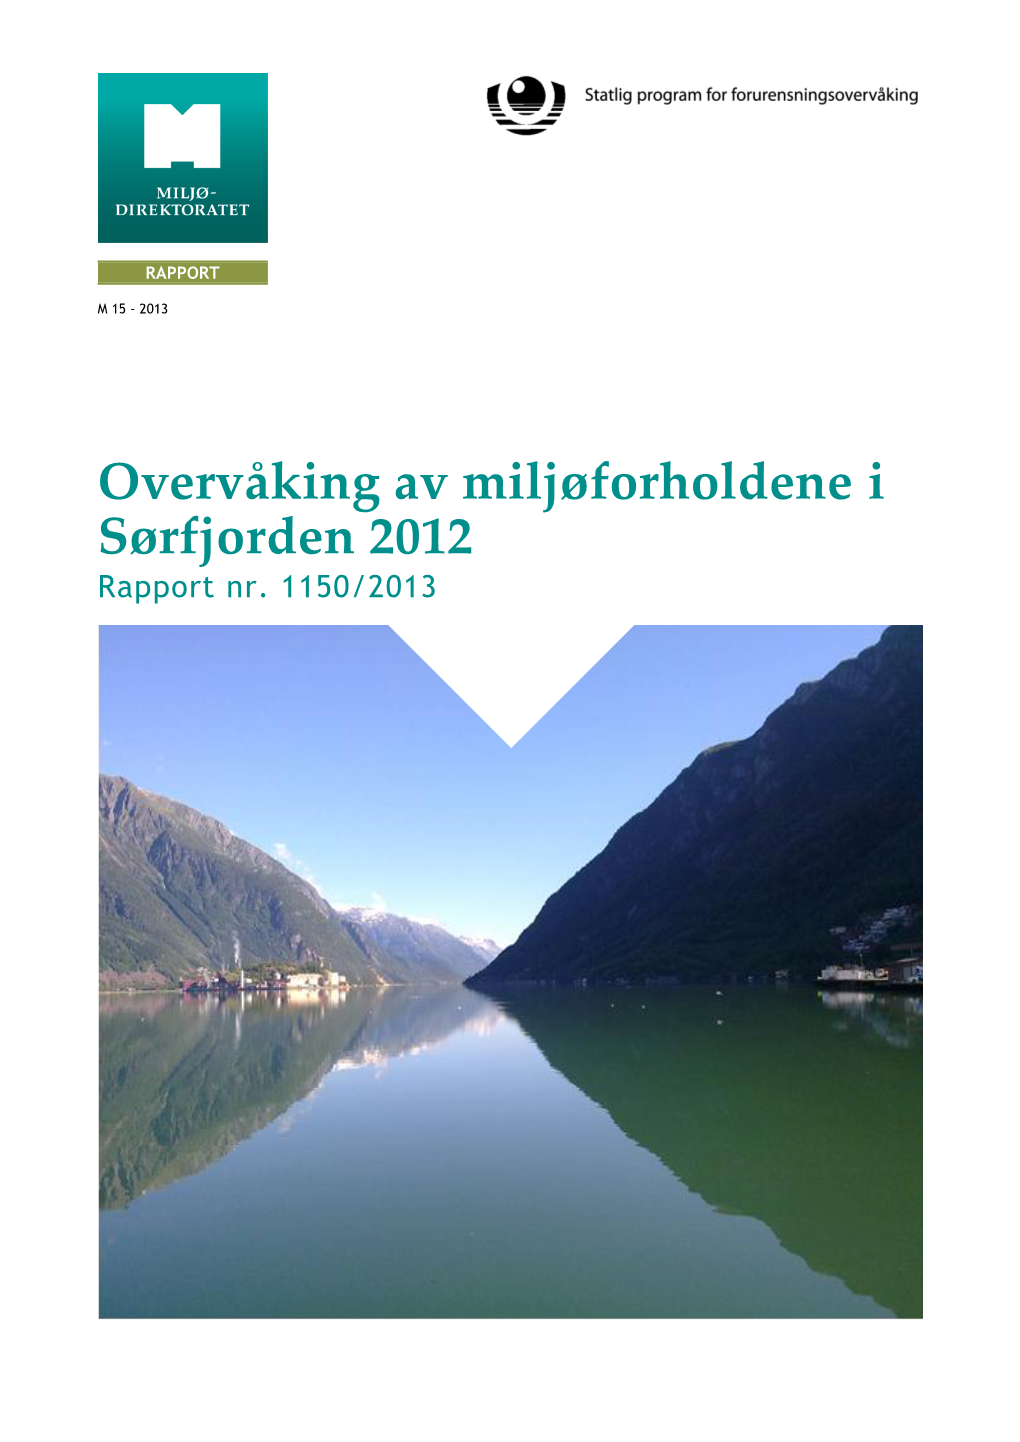 Overvåking Av Miljøforholdene I Sørfjorden 2012 Rapport Nr